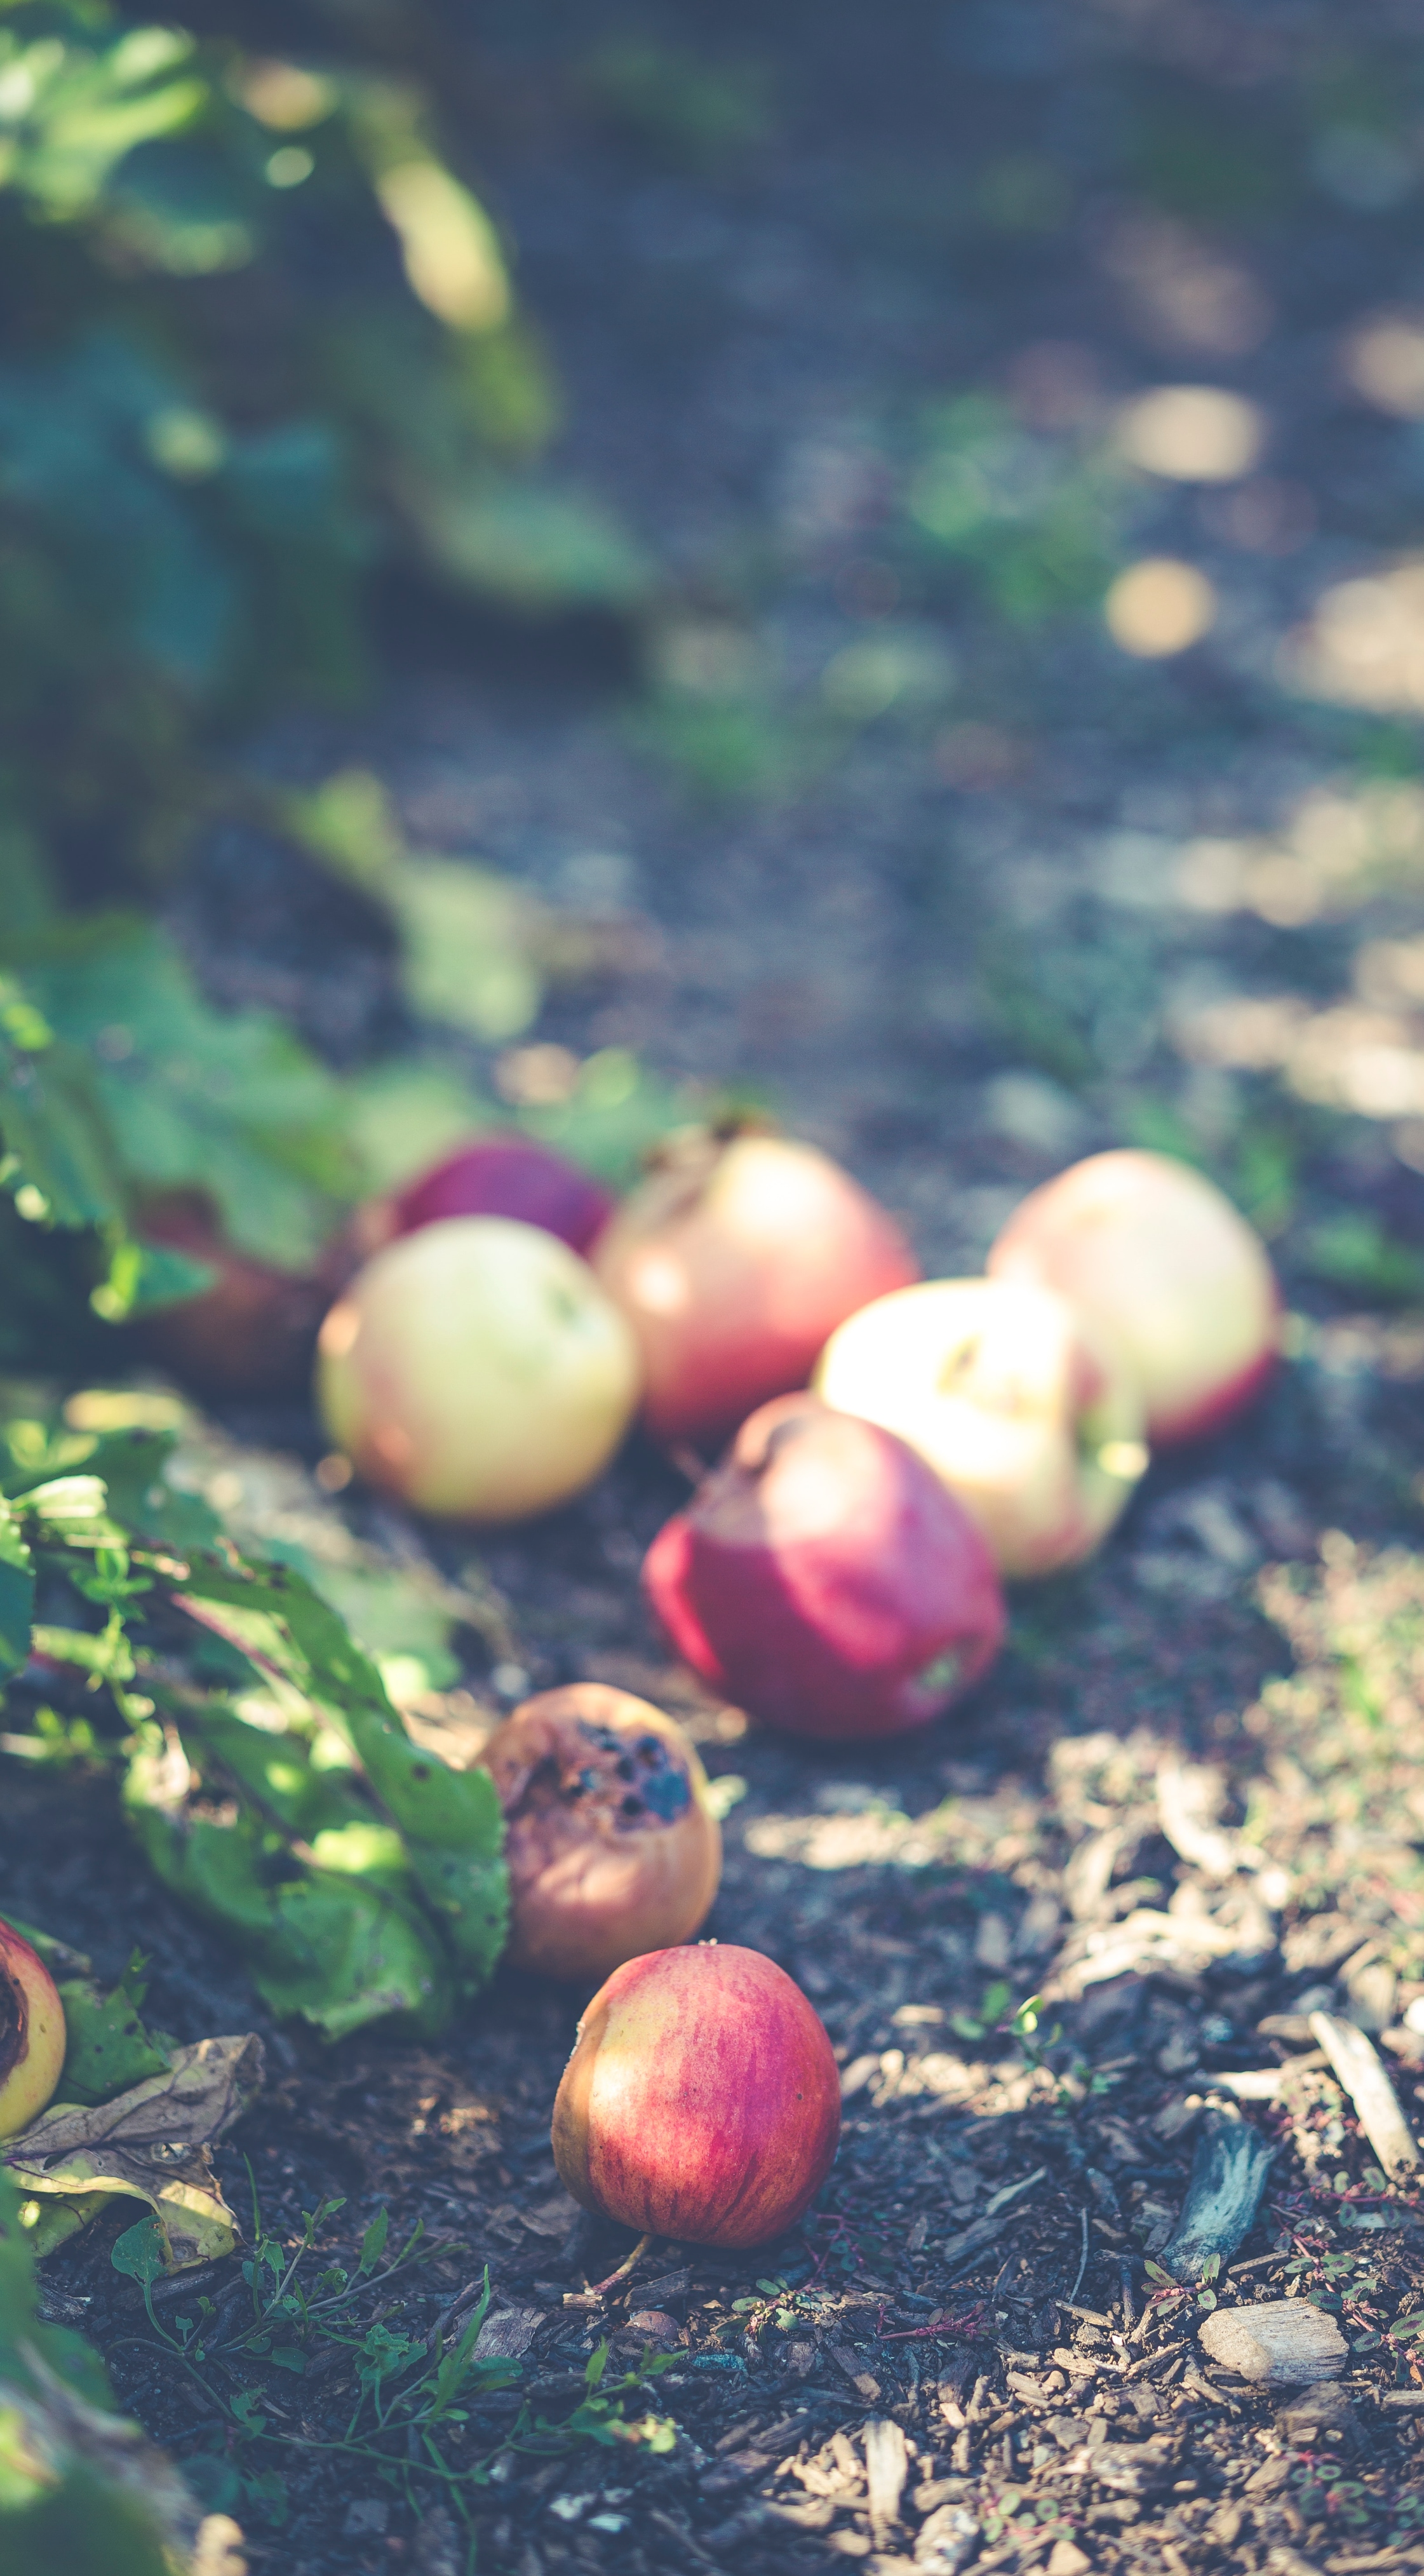 Bilde av epler som ligger strødd på bakken under epletrær